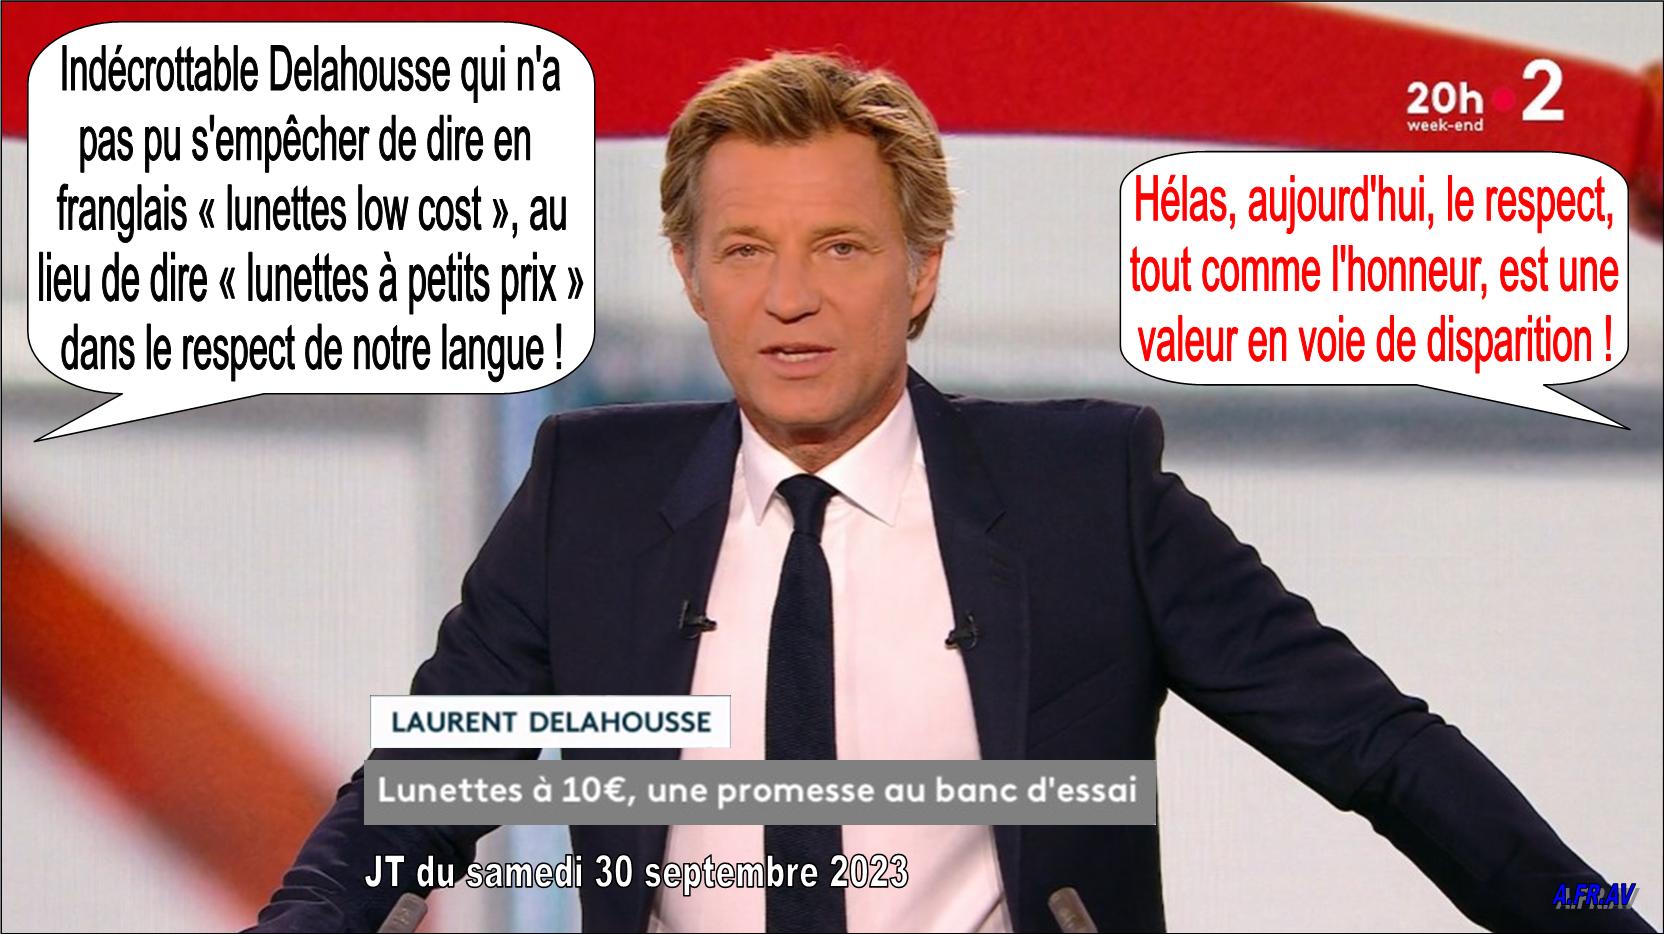 Laurent Delahousse, journaliste anglomane du JT de 20h de France 2